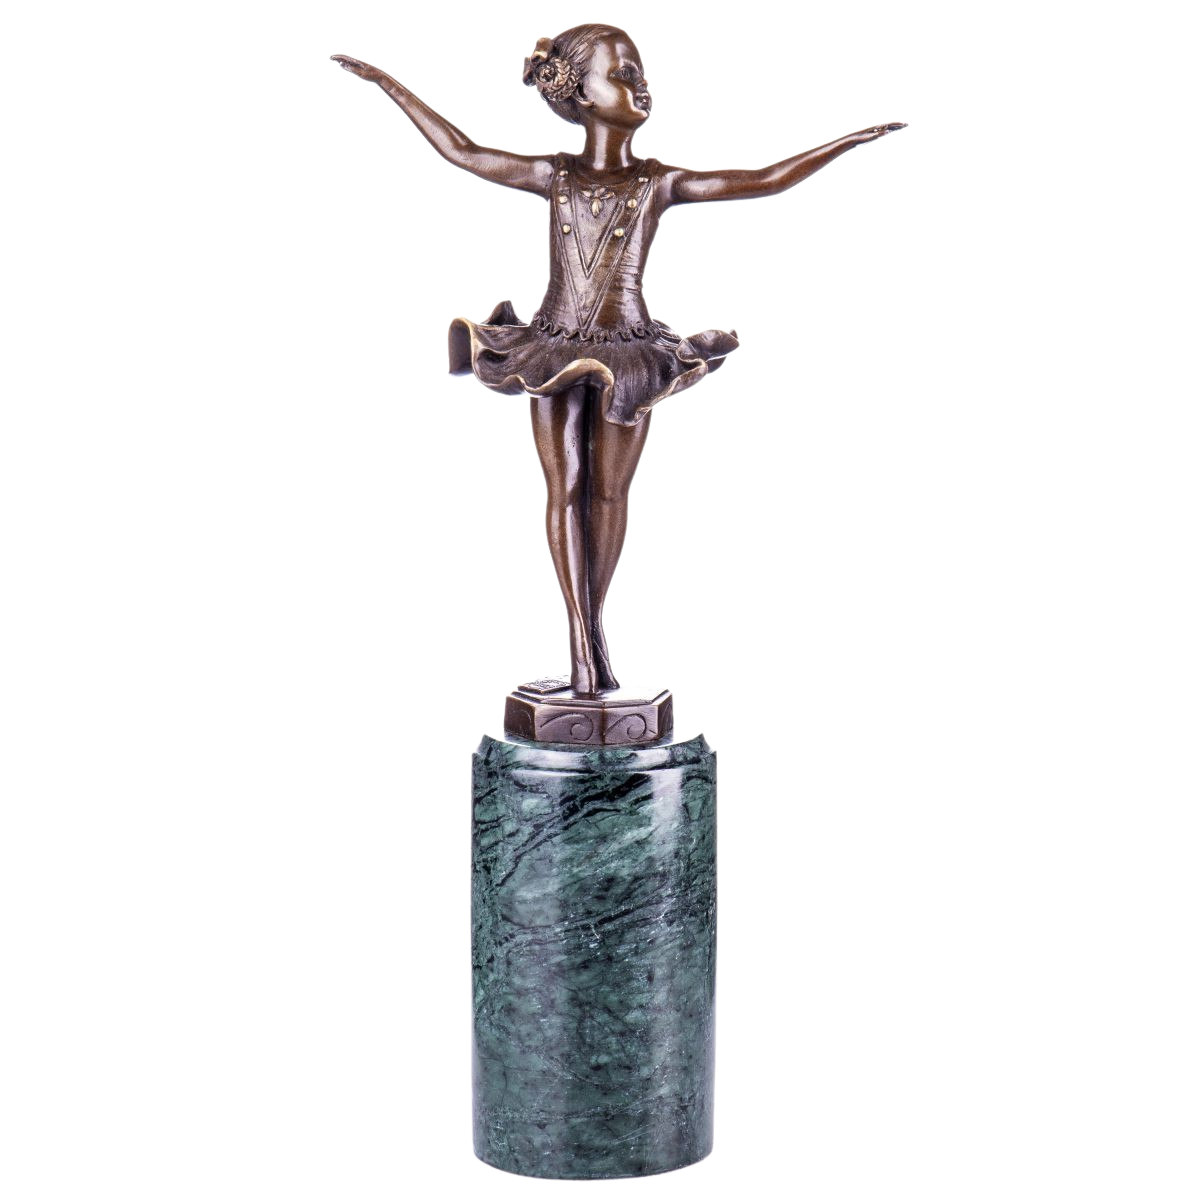 Bronzen beeld "Cute Ballerina" te koop @ Betaalbarekunst.nl. Dit stukje kunst van is een echte verrijking voor je huis.